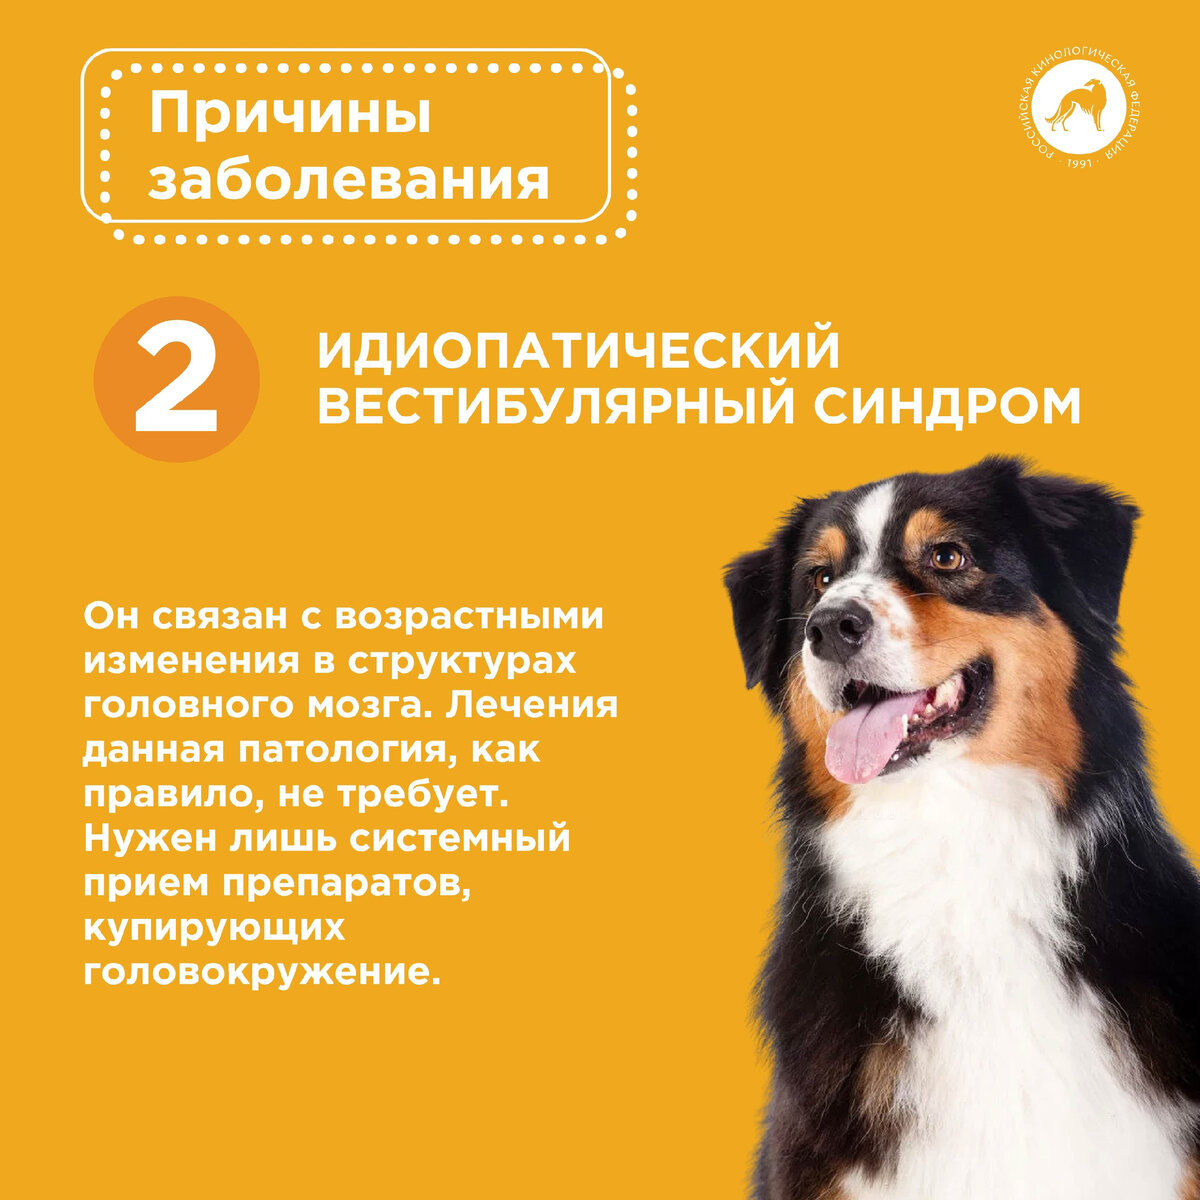 Вестибулярный синдром у собак: причины, симптомы, диагностика, лечение - советы от ветеринара